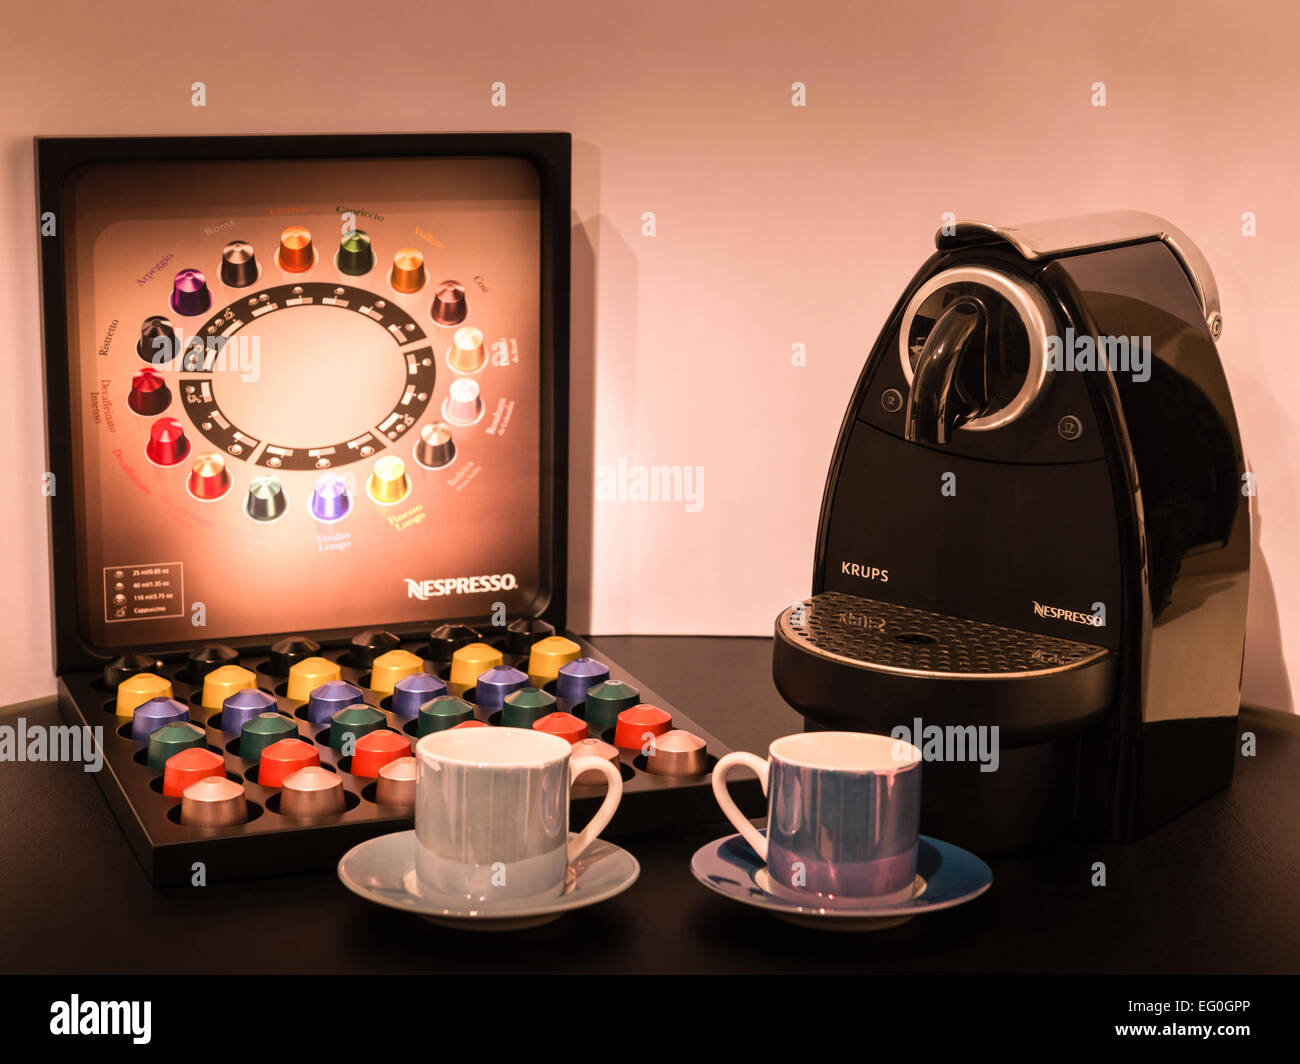 Plans Nespresso pour ouvrir une série de cafés de rue en Europe, y compris le Royaume-Uni Banque D'Images